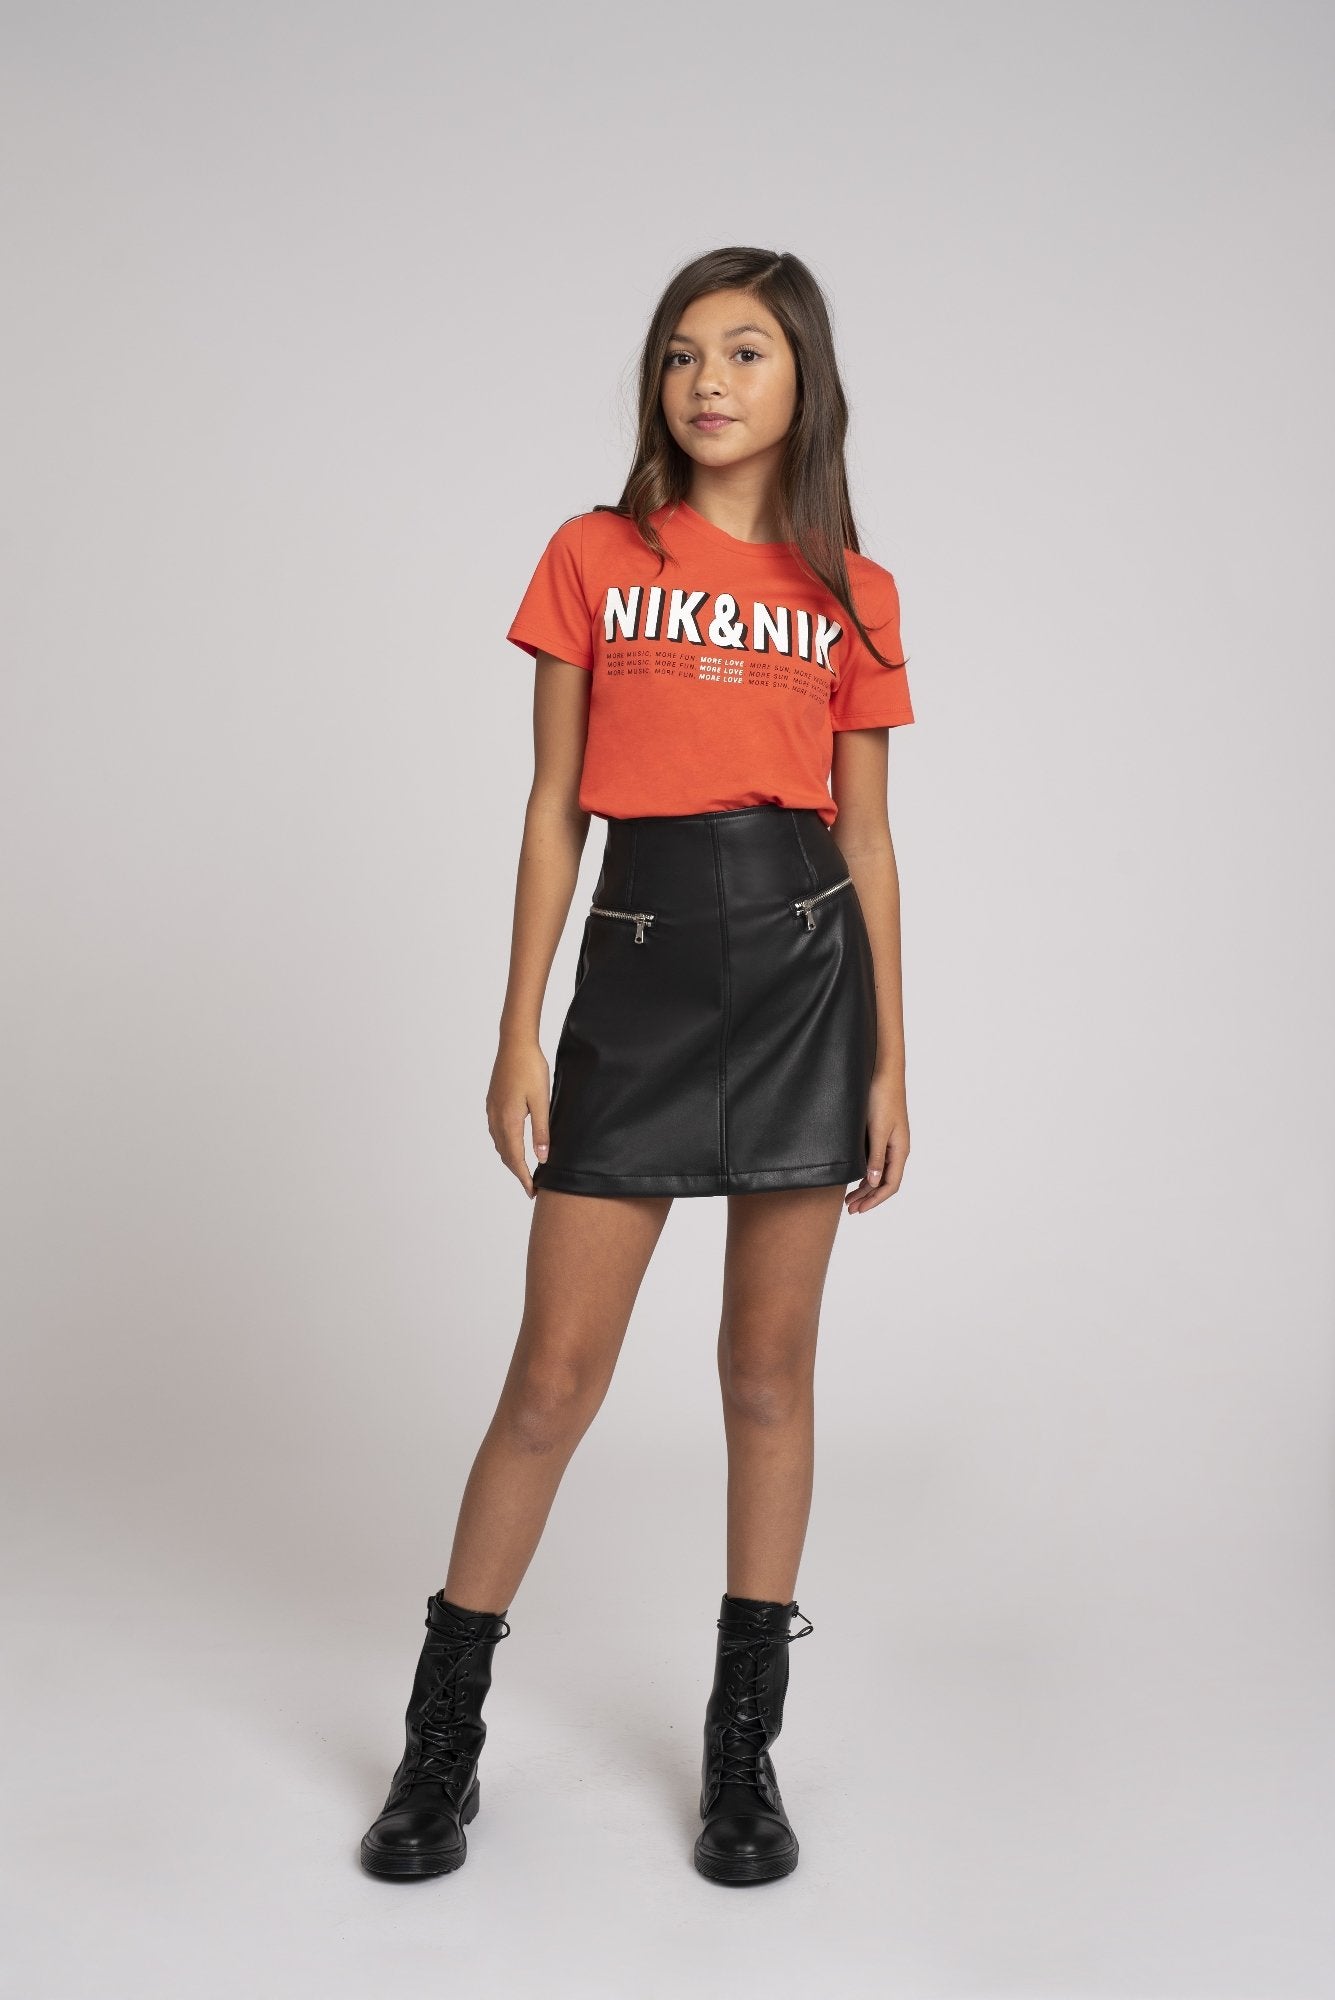 Meisjes More Love T-shirt van Nik & Nik in de kleur Rood in maat 176.